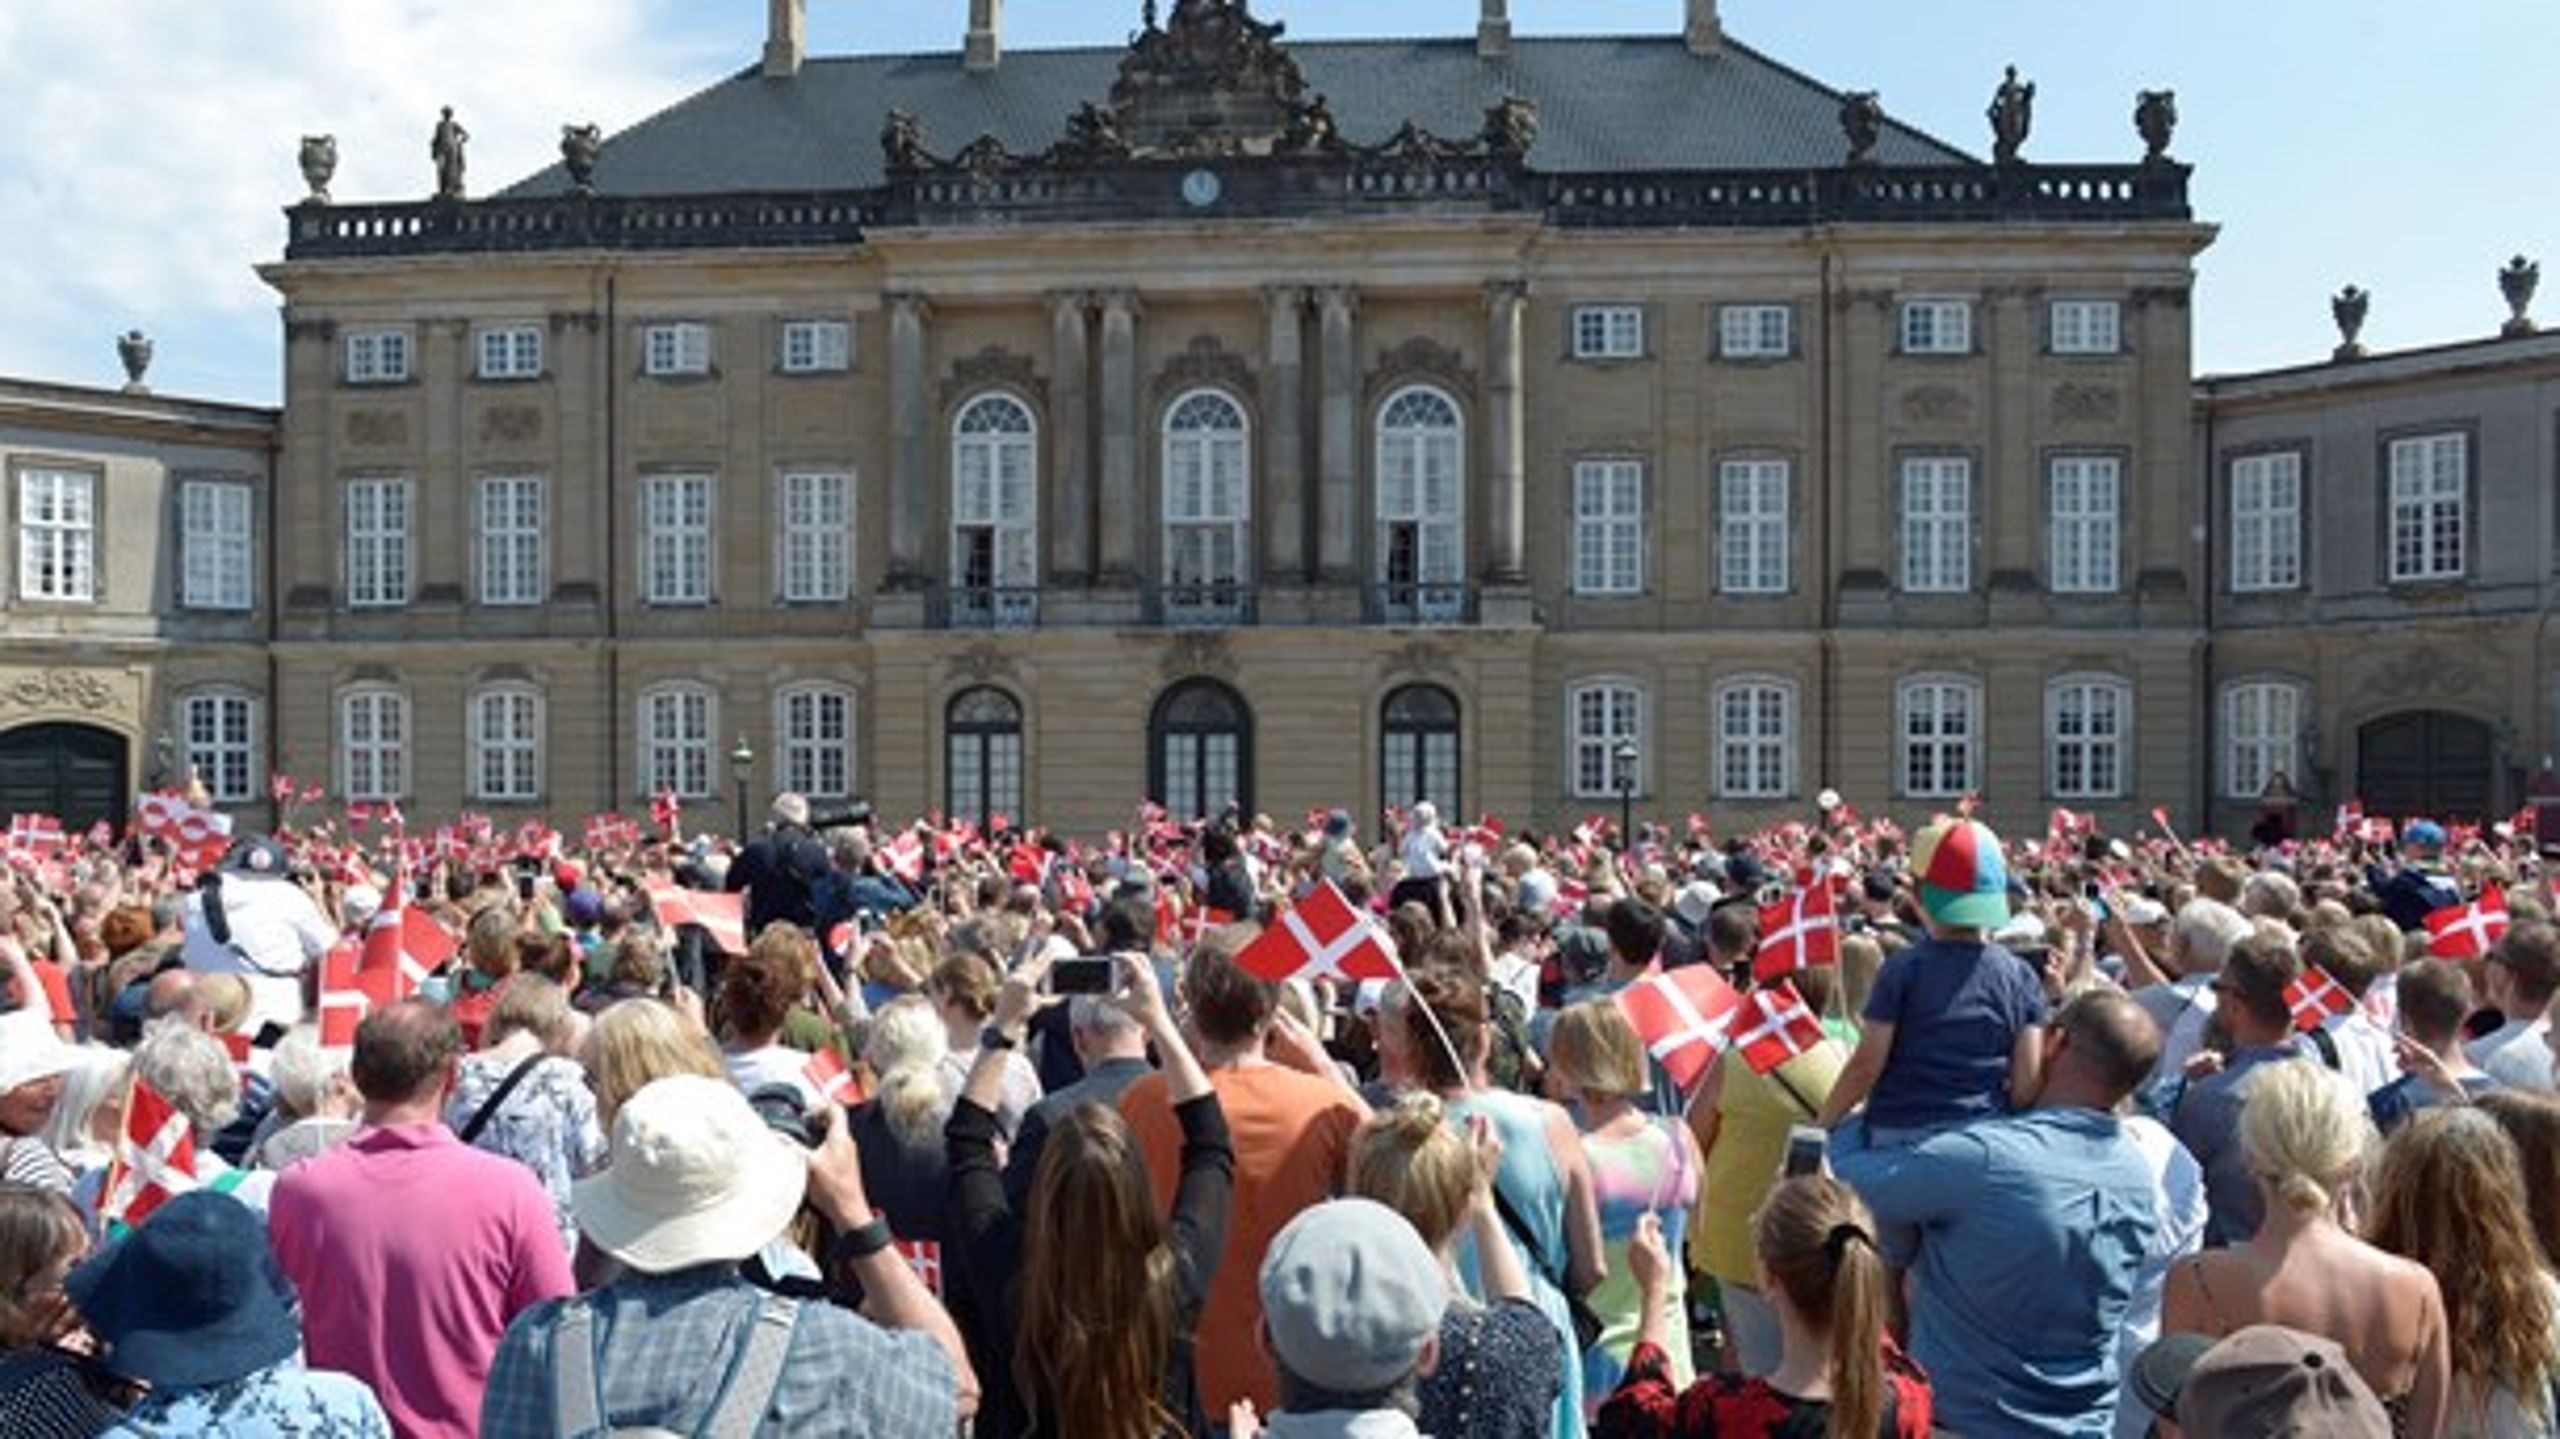 Claes Kirkeby Theilgaard mødte op på Amalienborg Slotsplads&nbsp;med et skilt med teksten "Afskaf kongehuset".